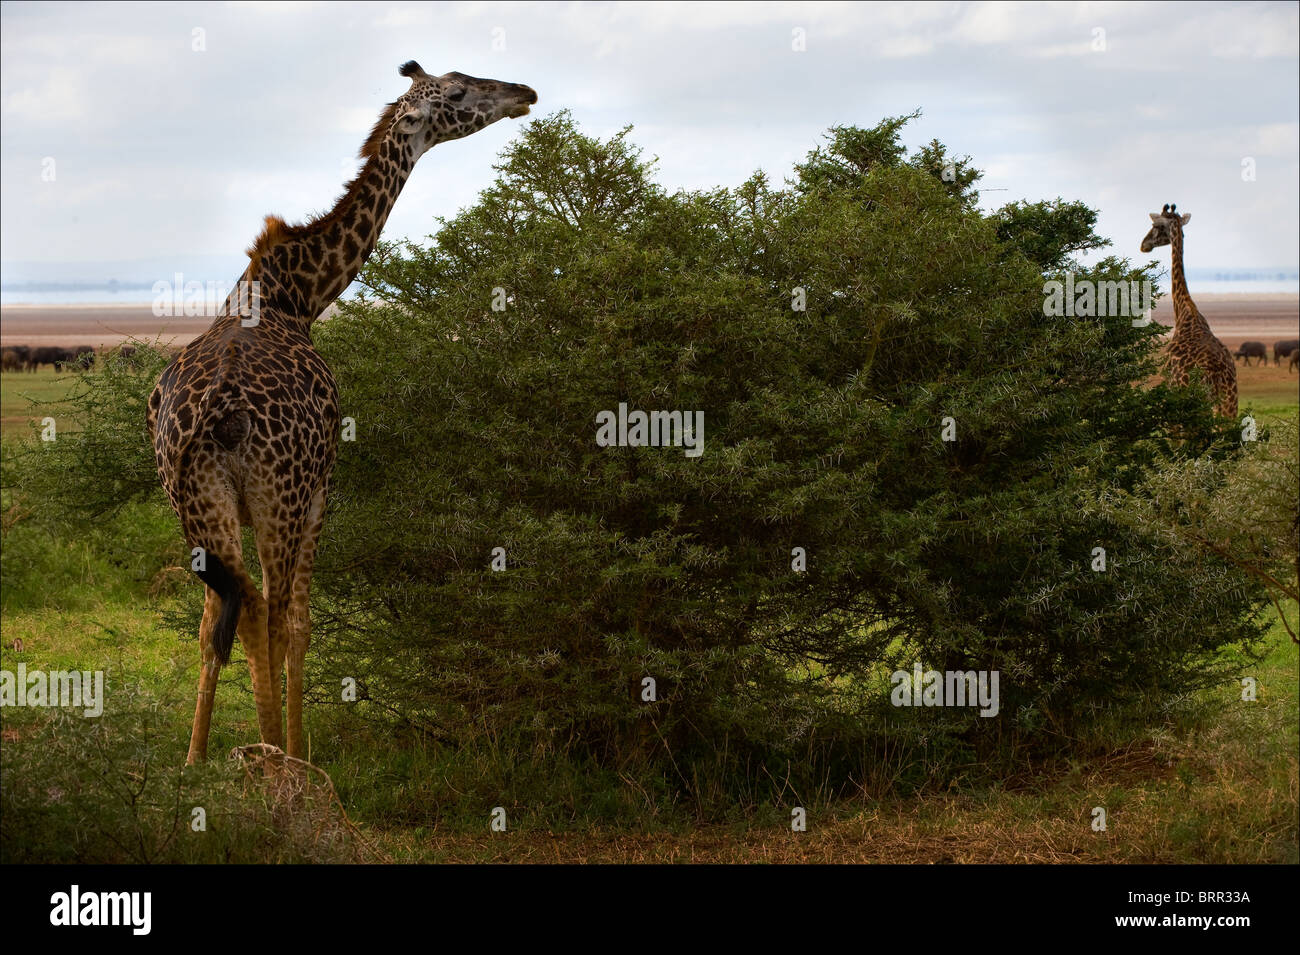 La girafe à l'acacia arbustes brise une branche épineuse. Banque D'Images